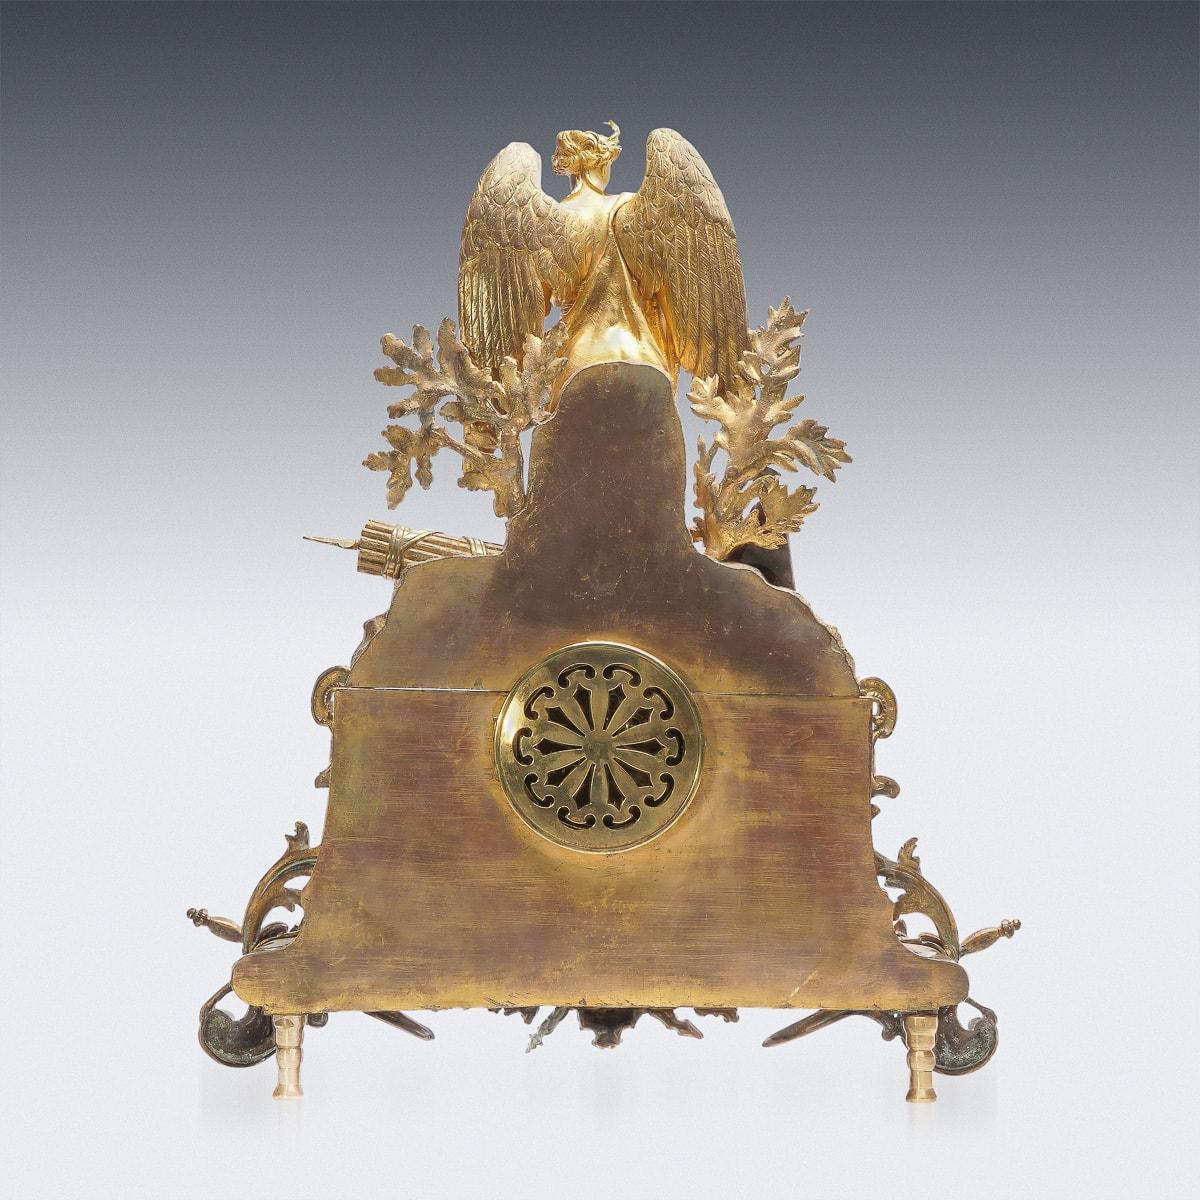 Ancienne pendule de cheminée en bronze doré de style Empire français du 19e siècle. Le cadran doré entouré de feuillage, l'intérieur avec un mouvement de huit jours avec frappe sur la cloche. Le plateau est orné d'une figure d'ange, la base